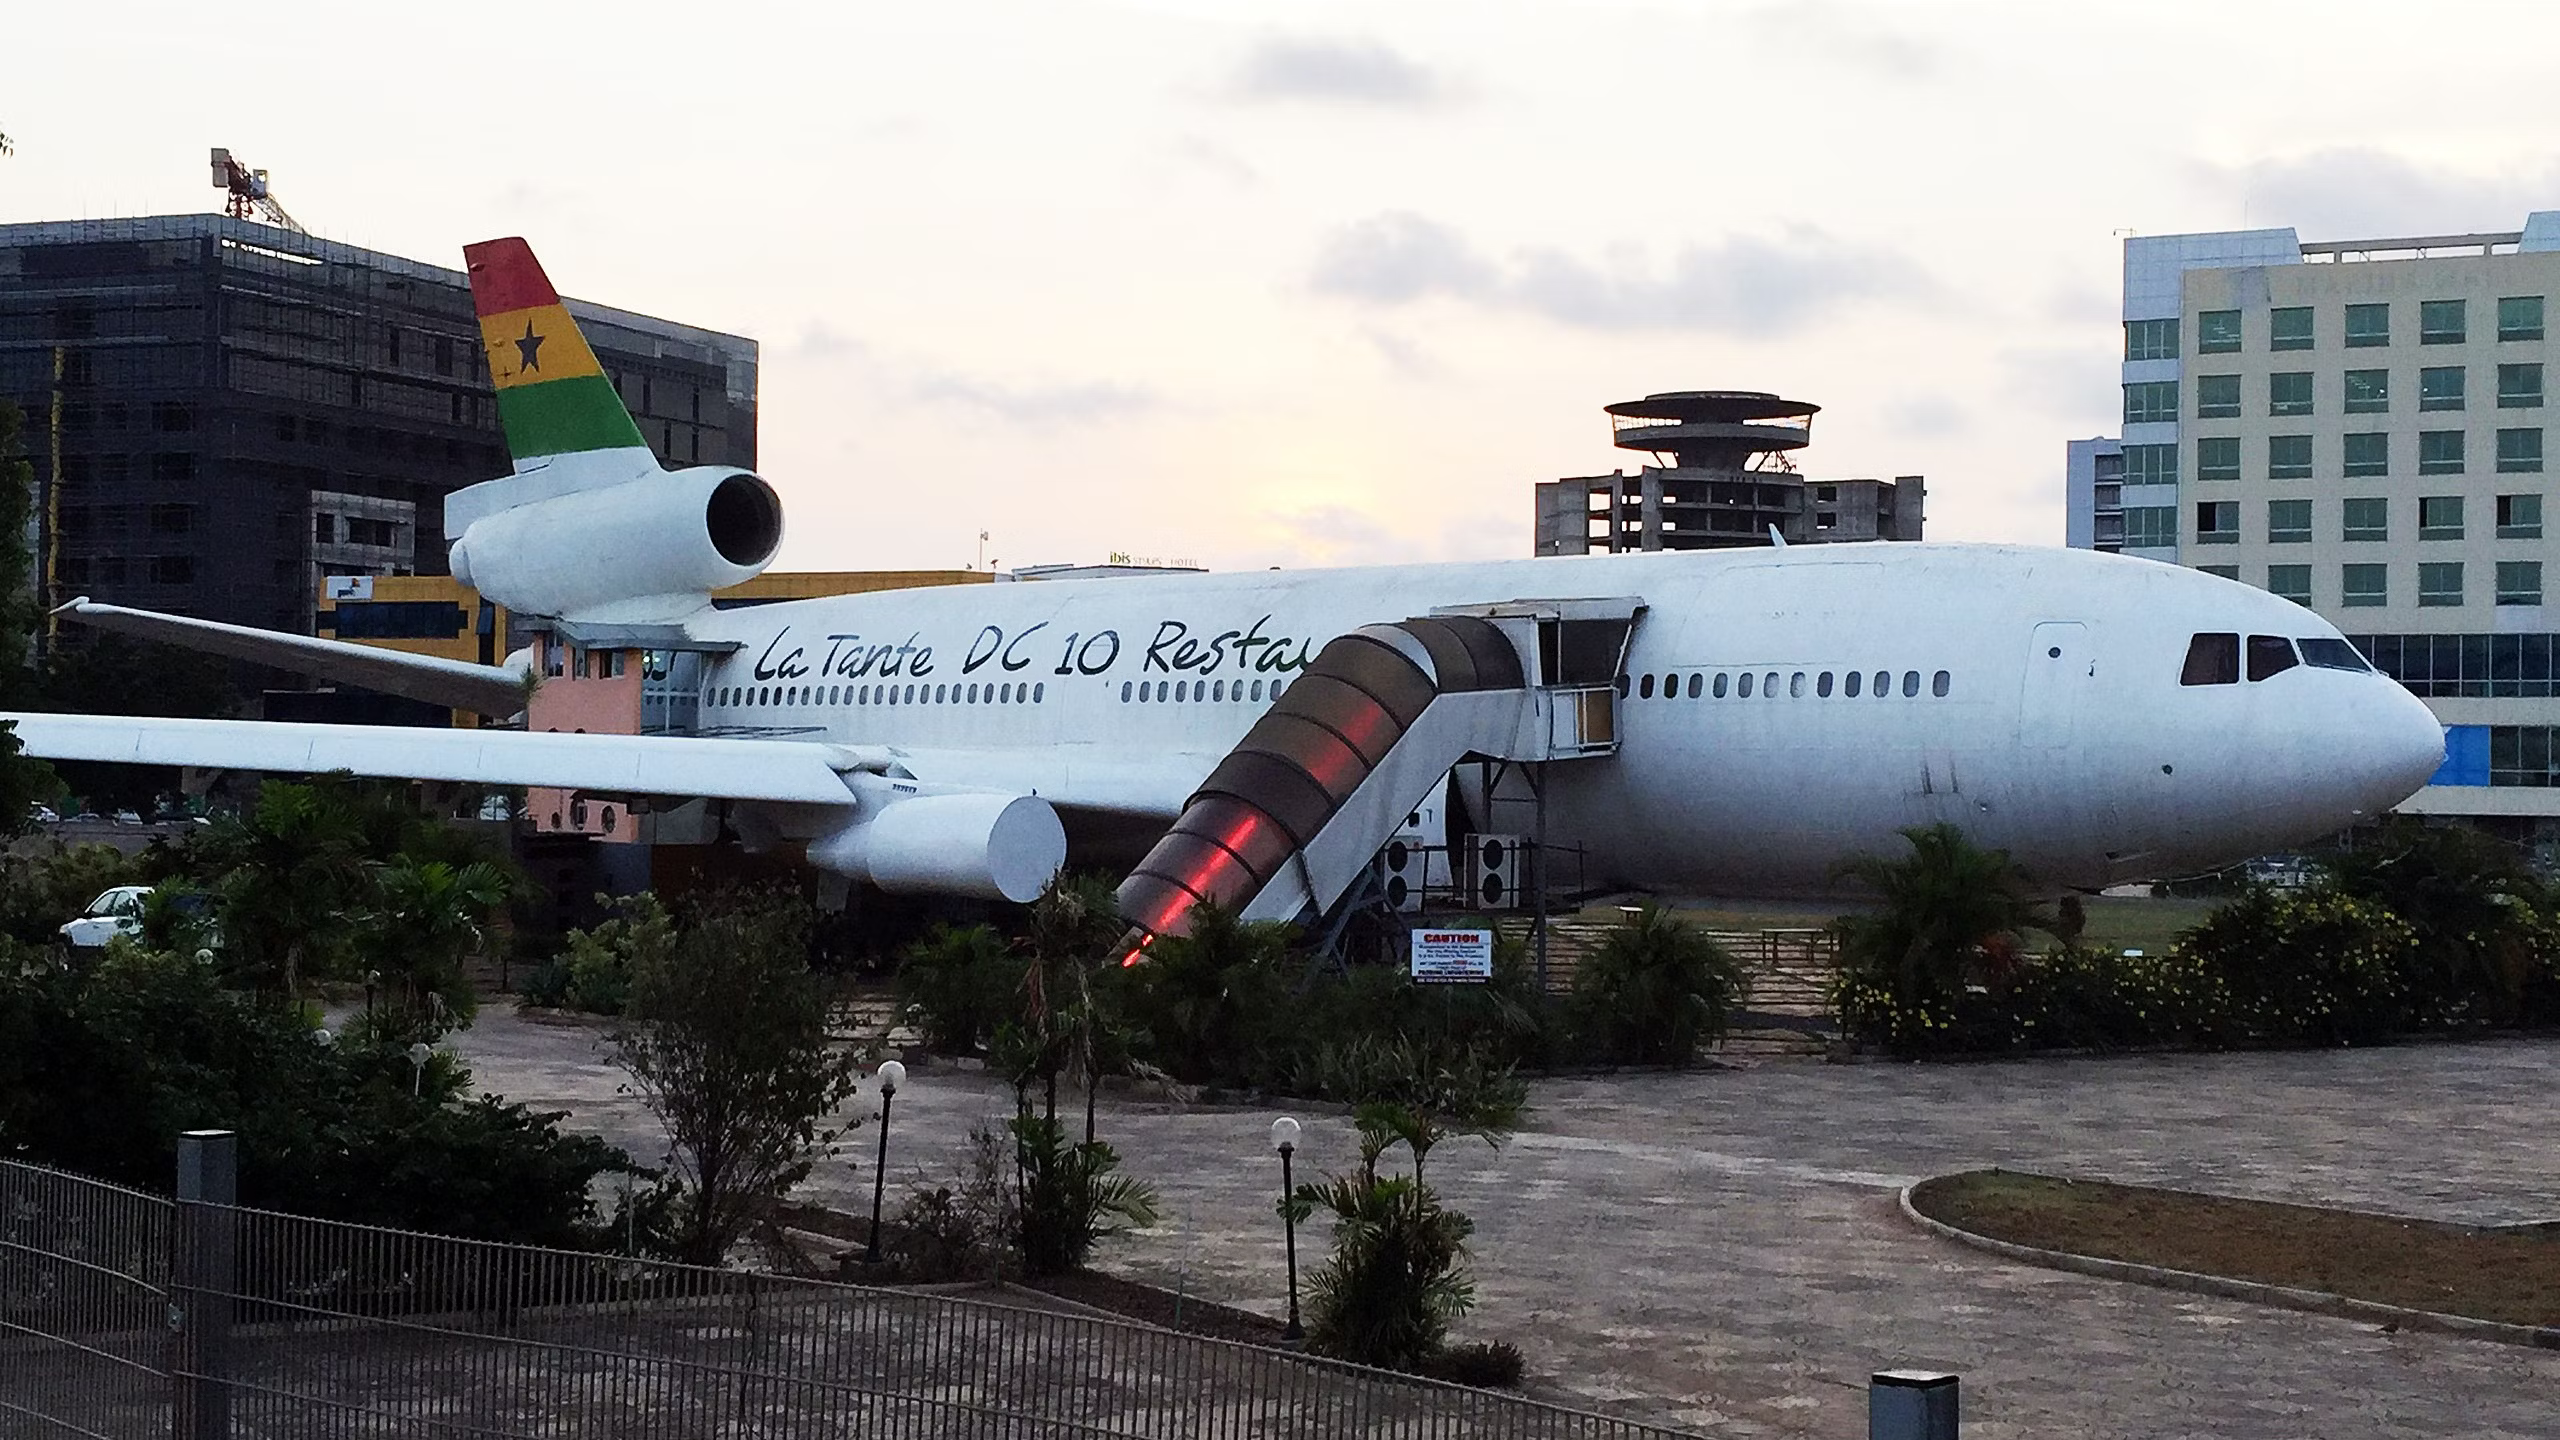 The Ghana DC-10 Restaurant.